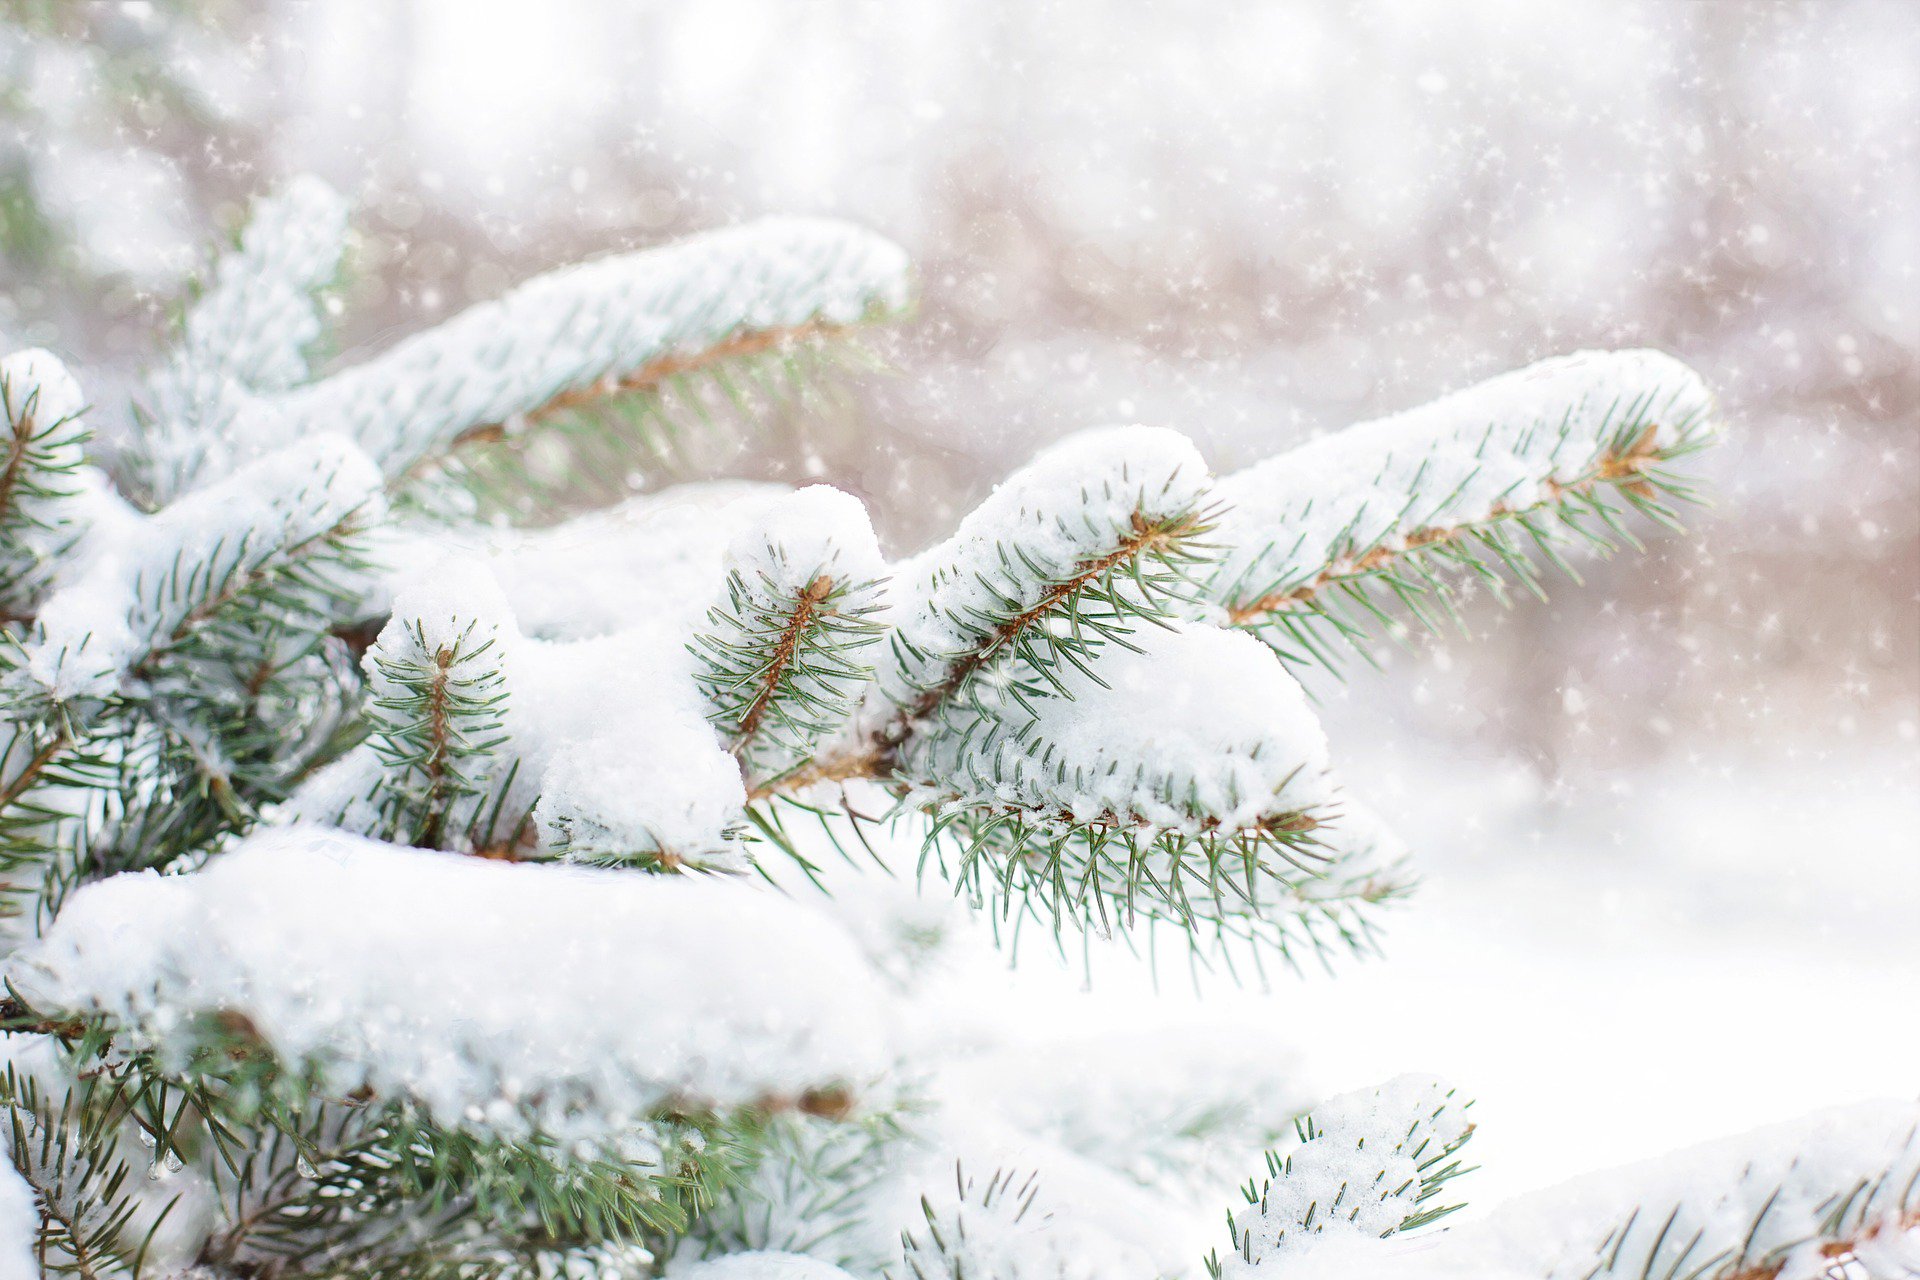 snow-in-pine-tree-1265119_1920.jpg